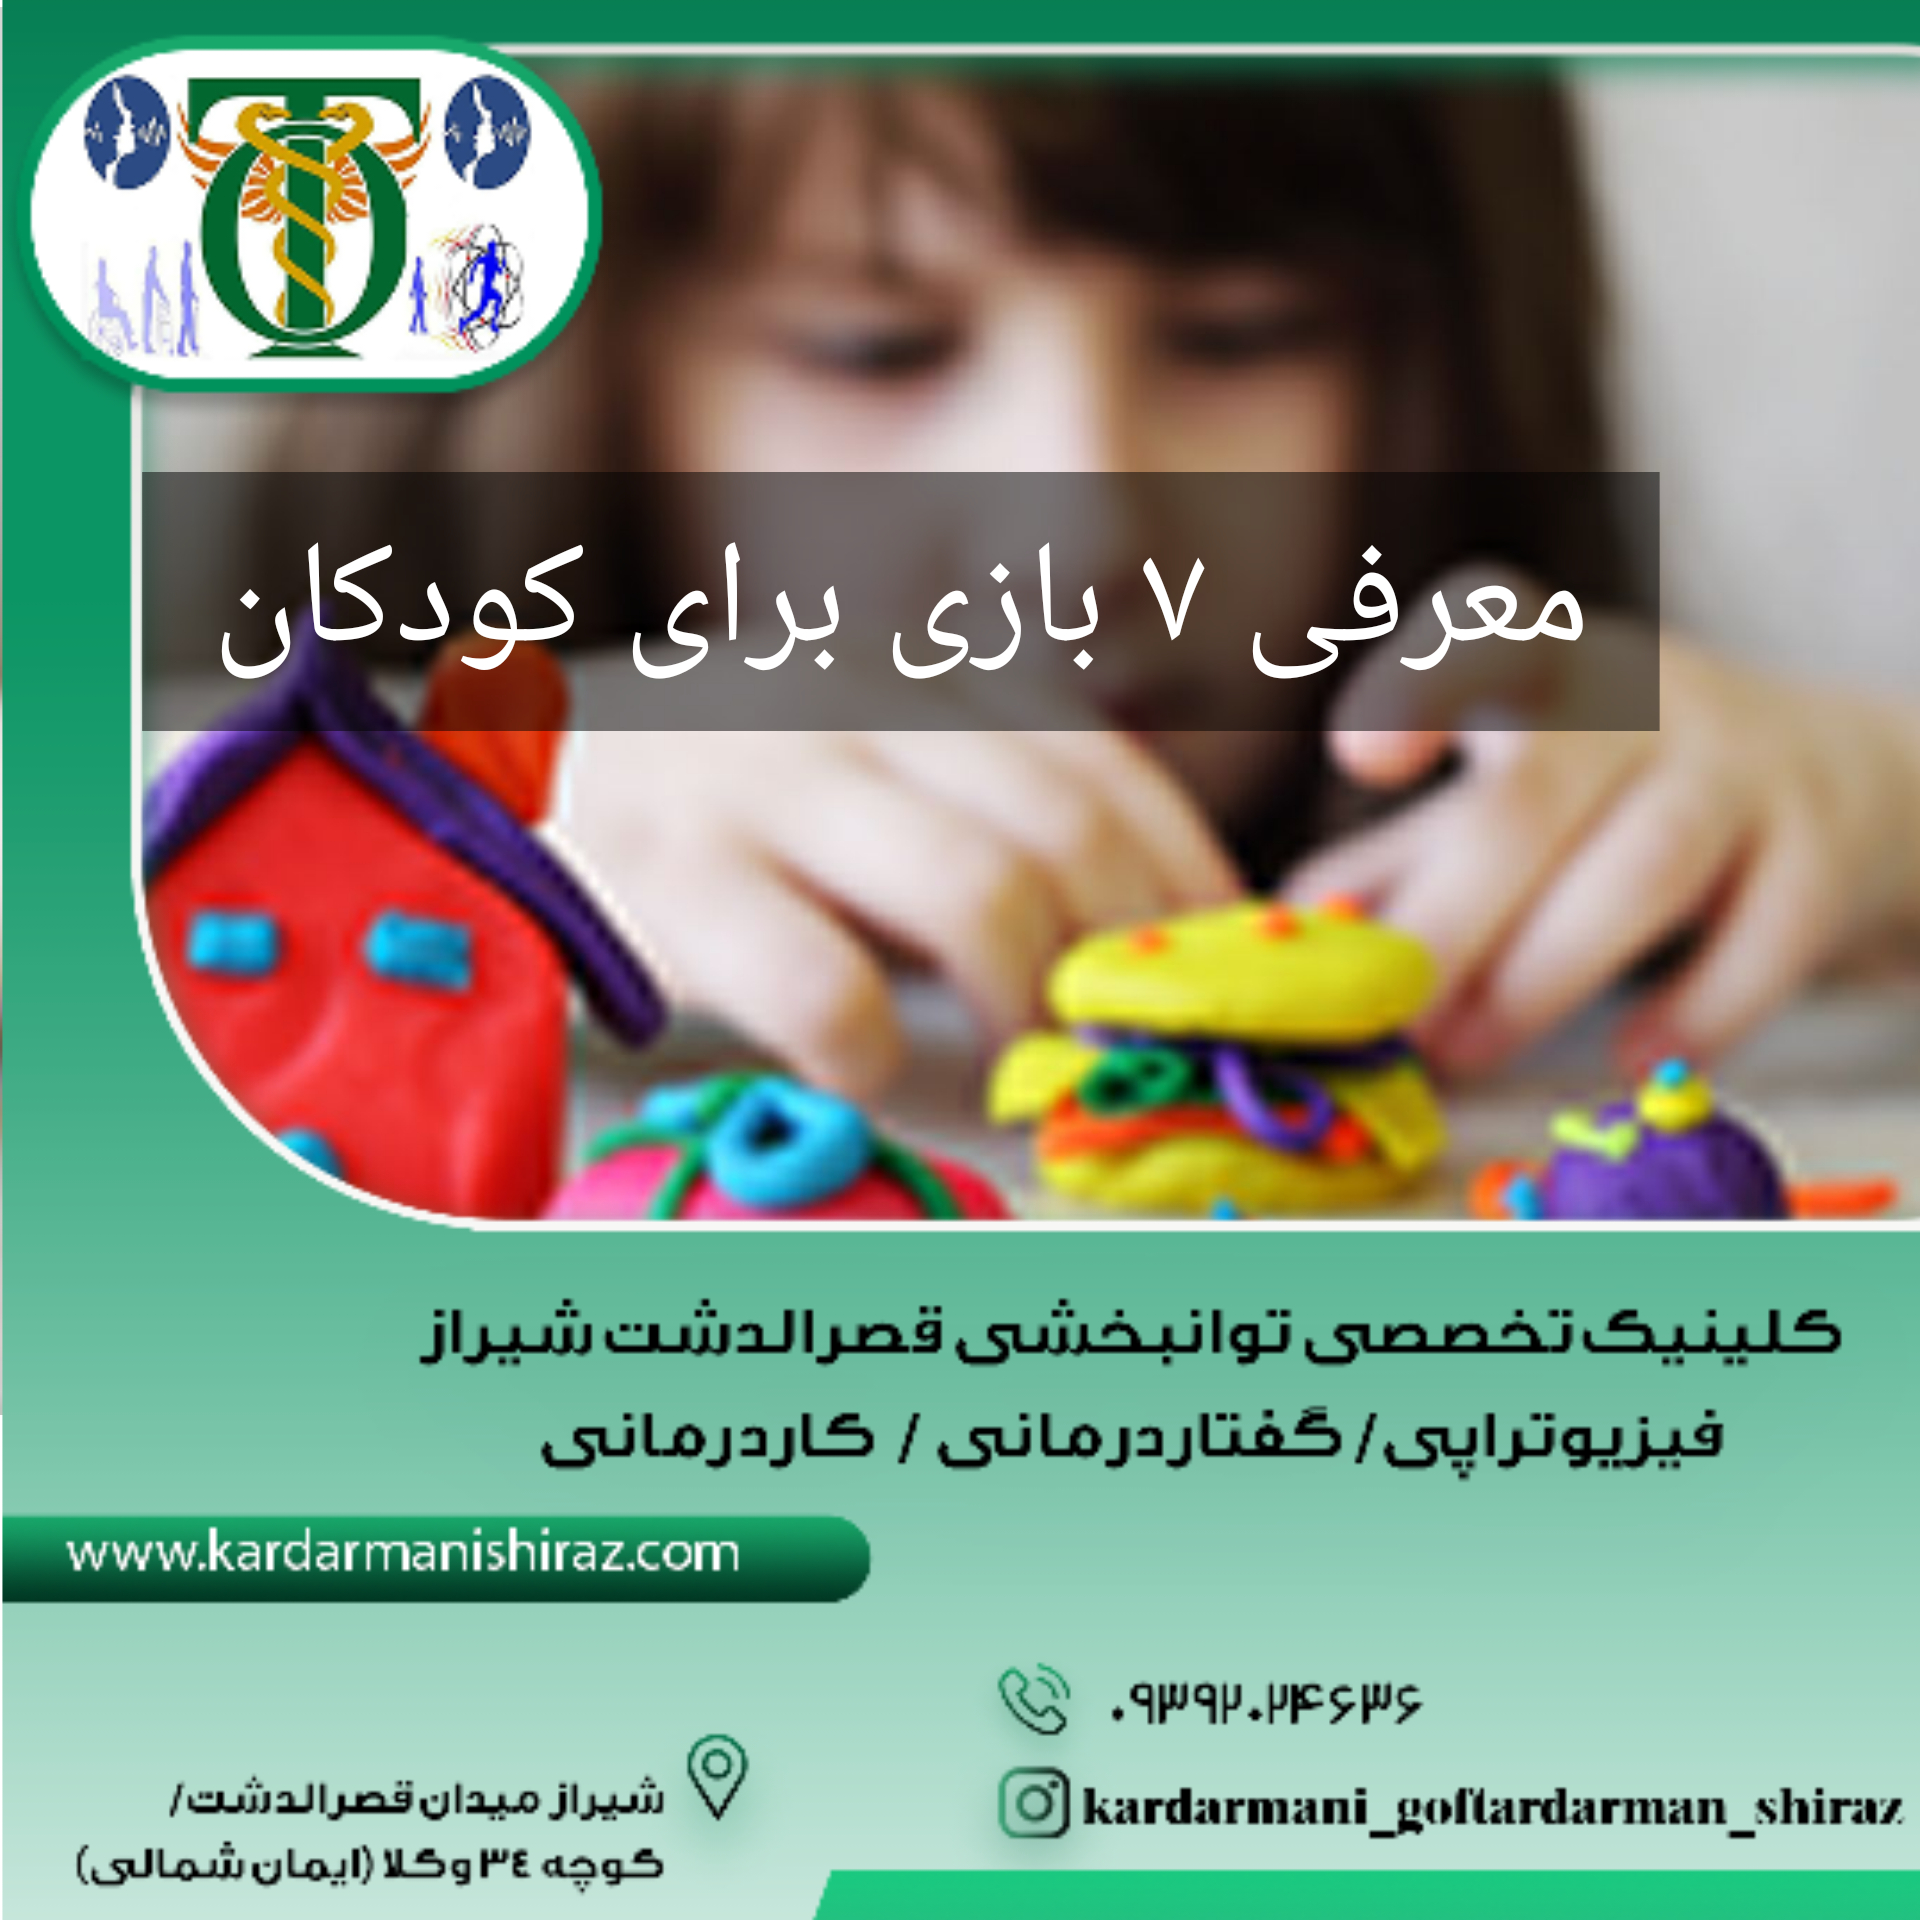 بازی های مناسب برای کودکان_کلاس تقویت هوش در شیراز